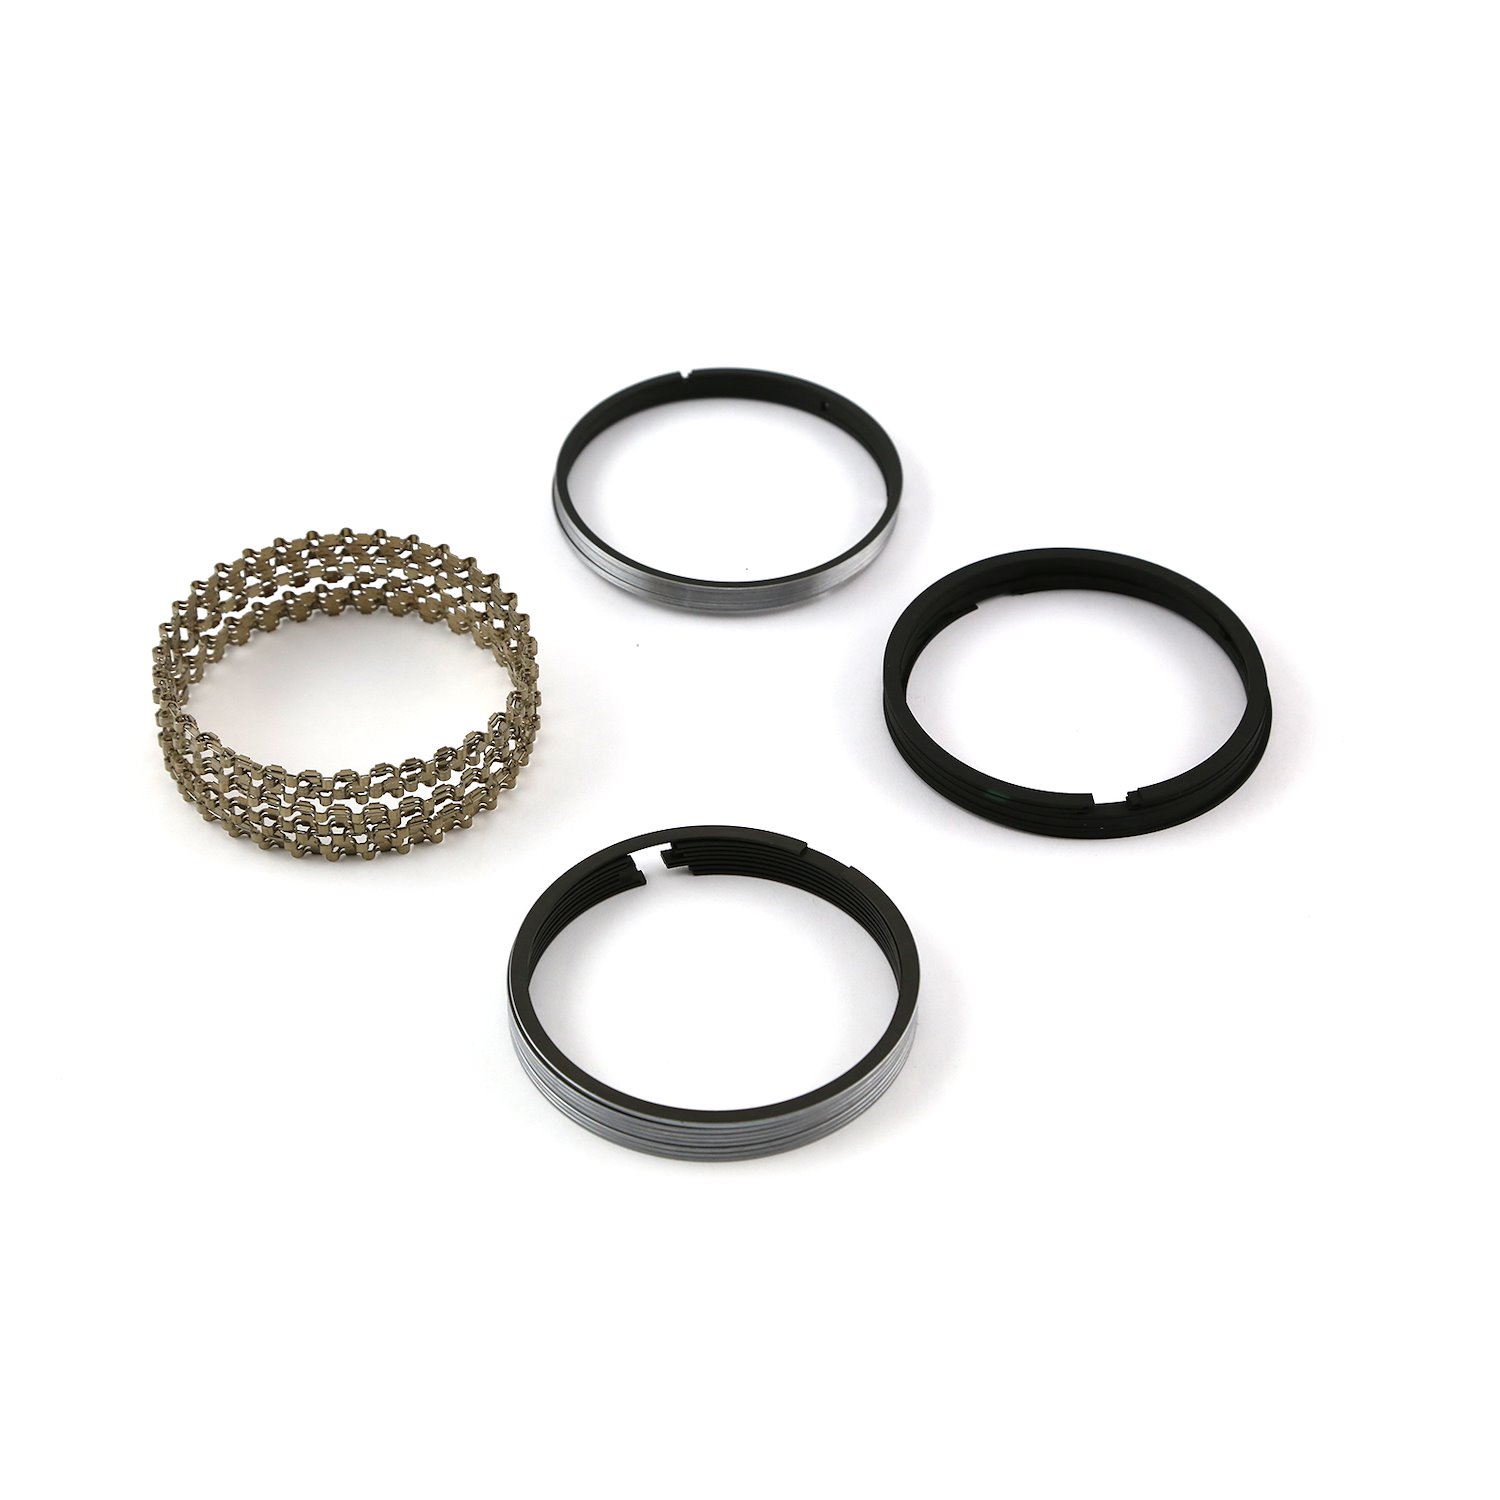 4.000 Bore - 5/64 - 5/64 - 3/16 Plasma Moly Piston Ring Set